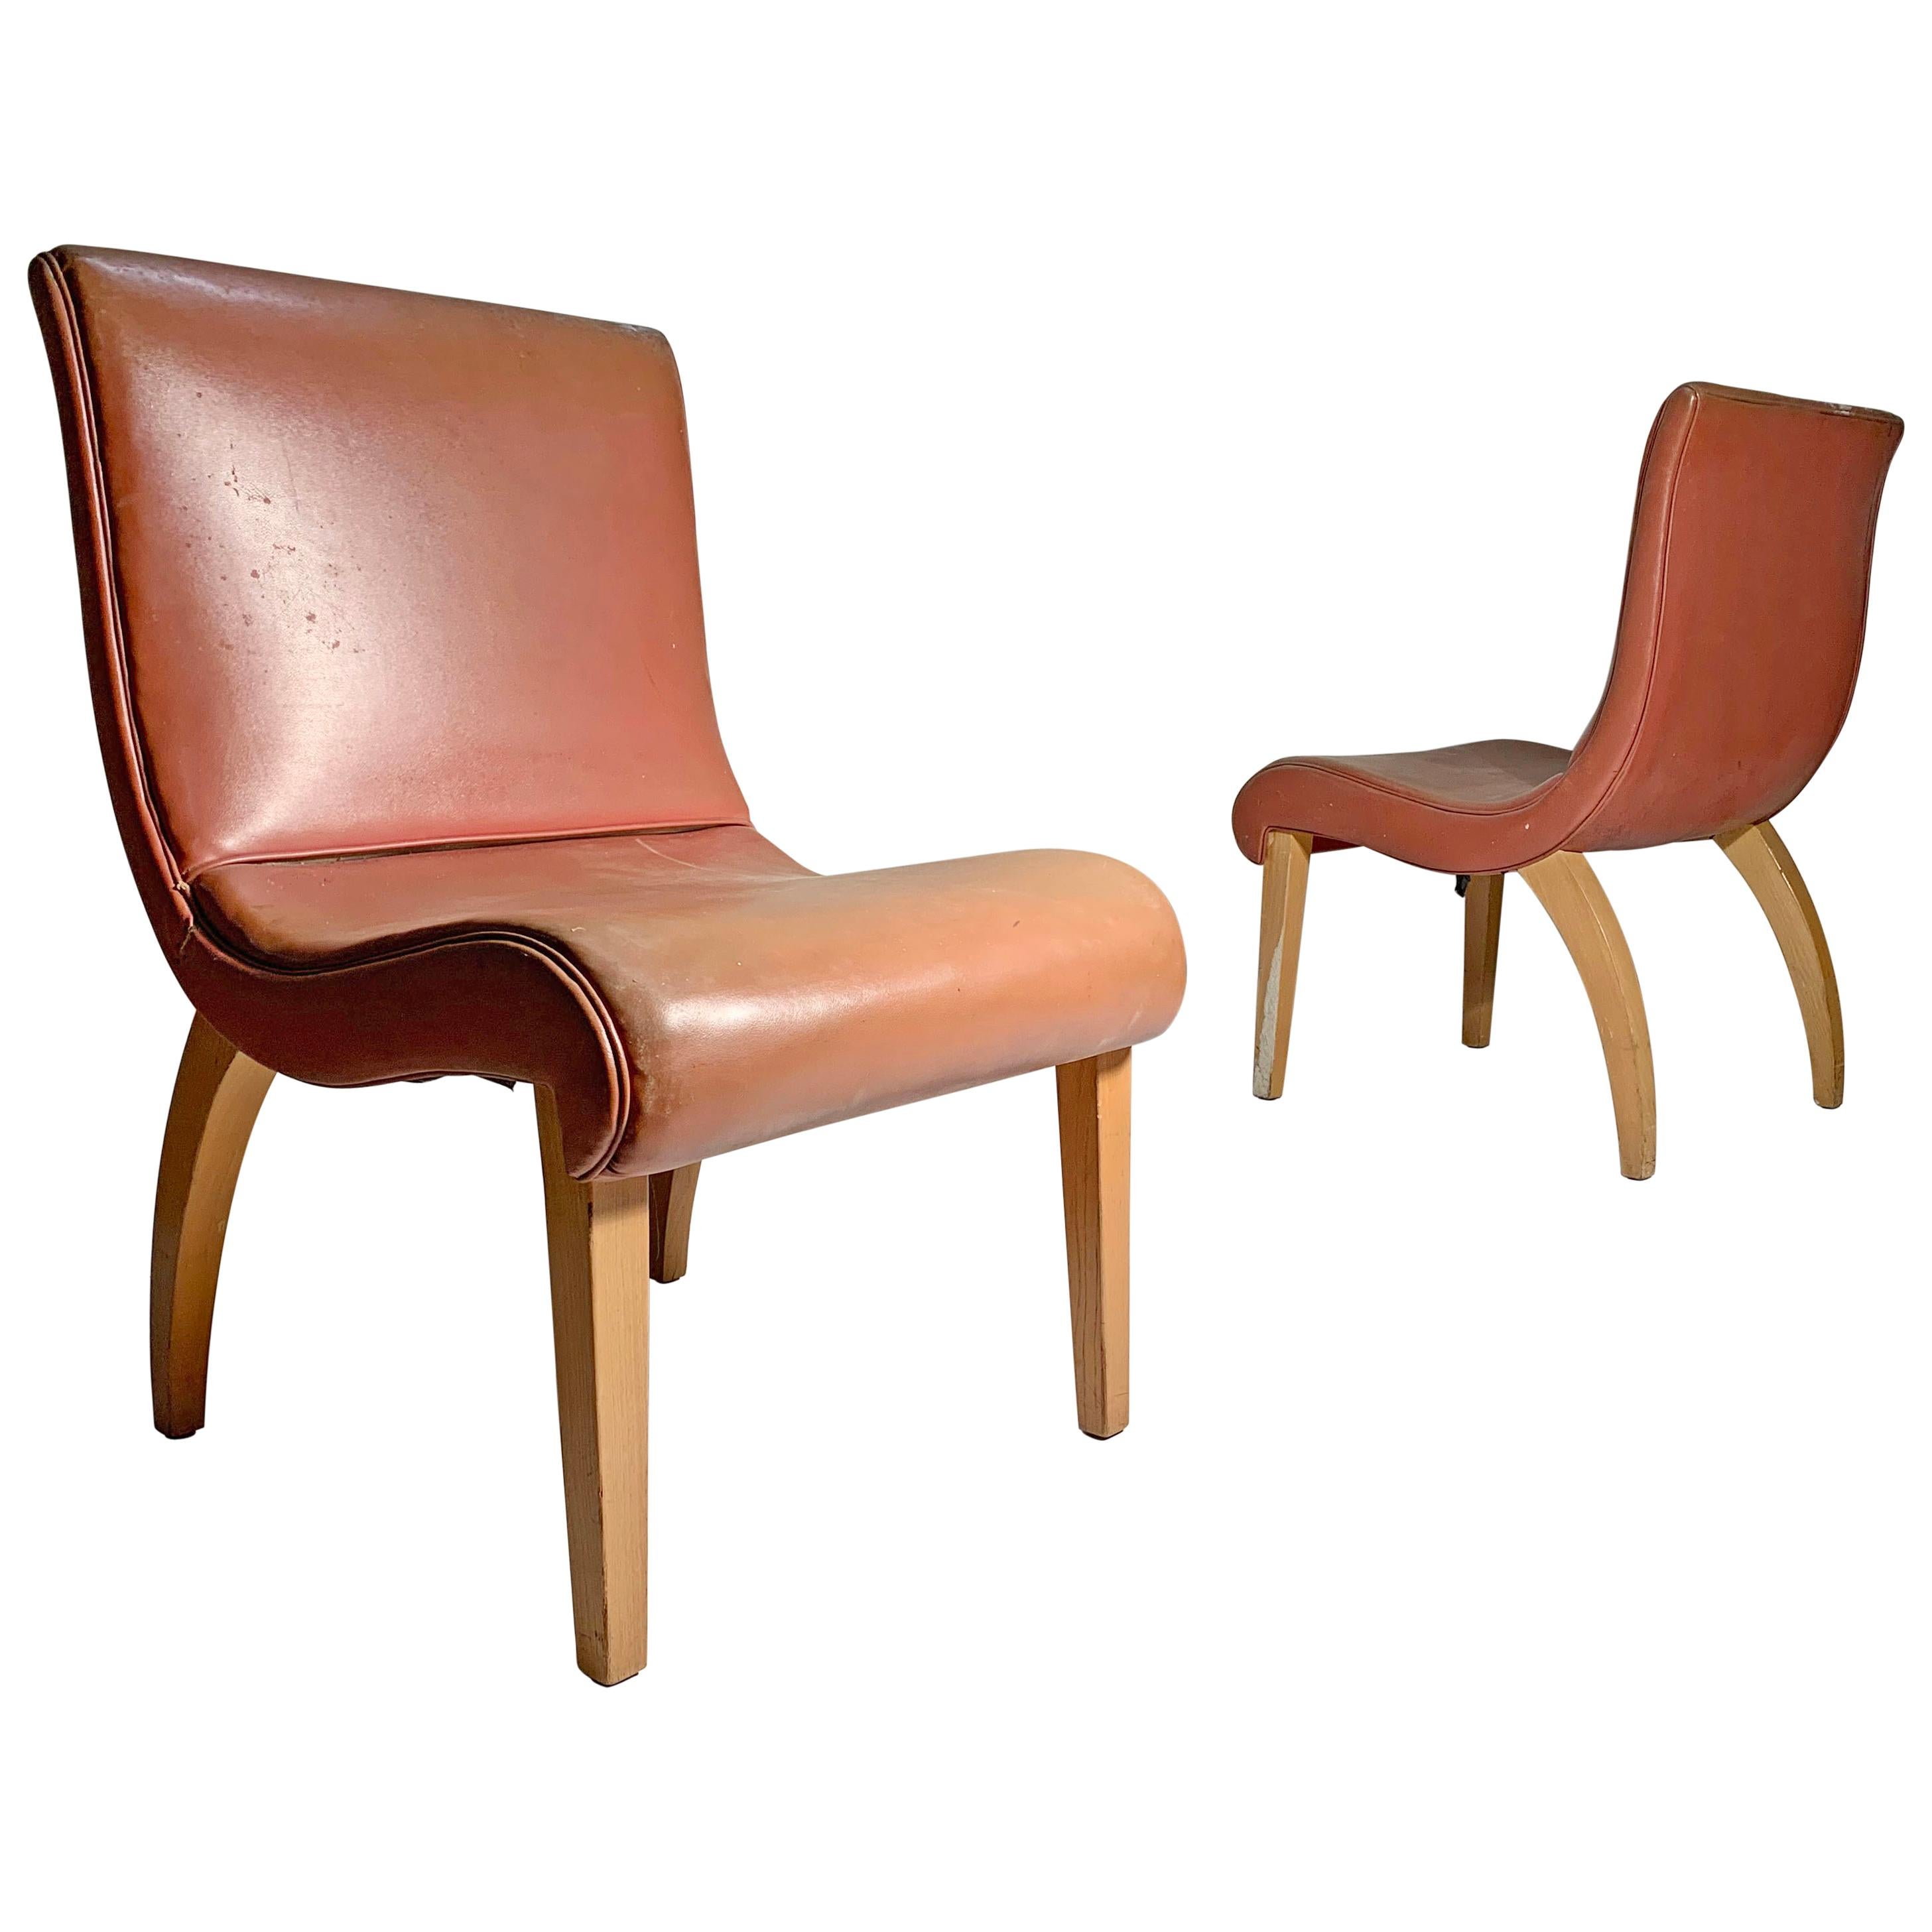 Ein Paar Lounge- oder Beistellstühle aus den 1940er Jahren, Gilbert Rohde zugeschrieben